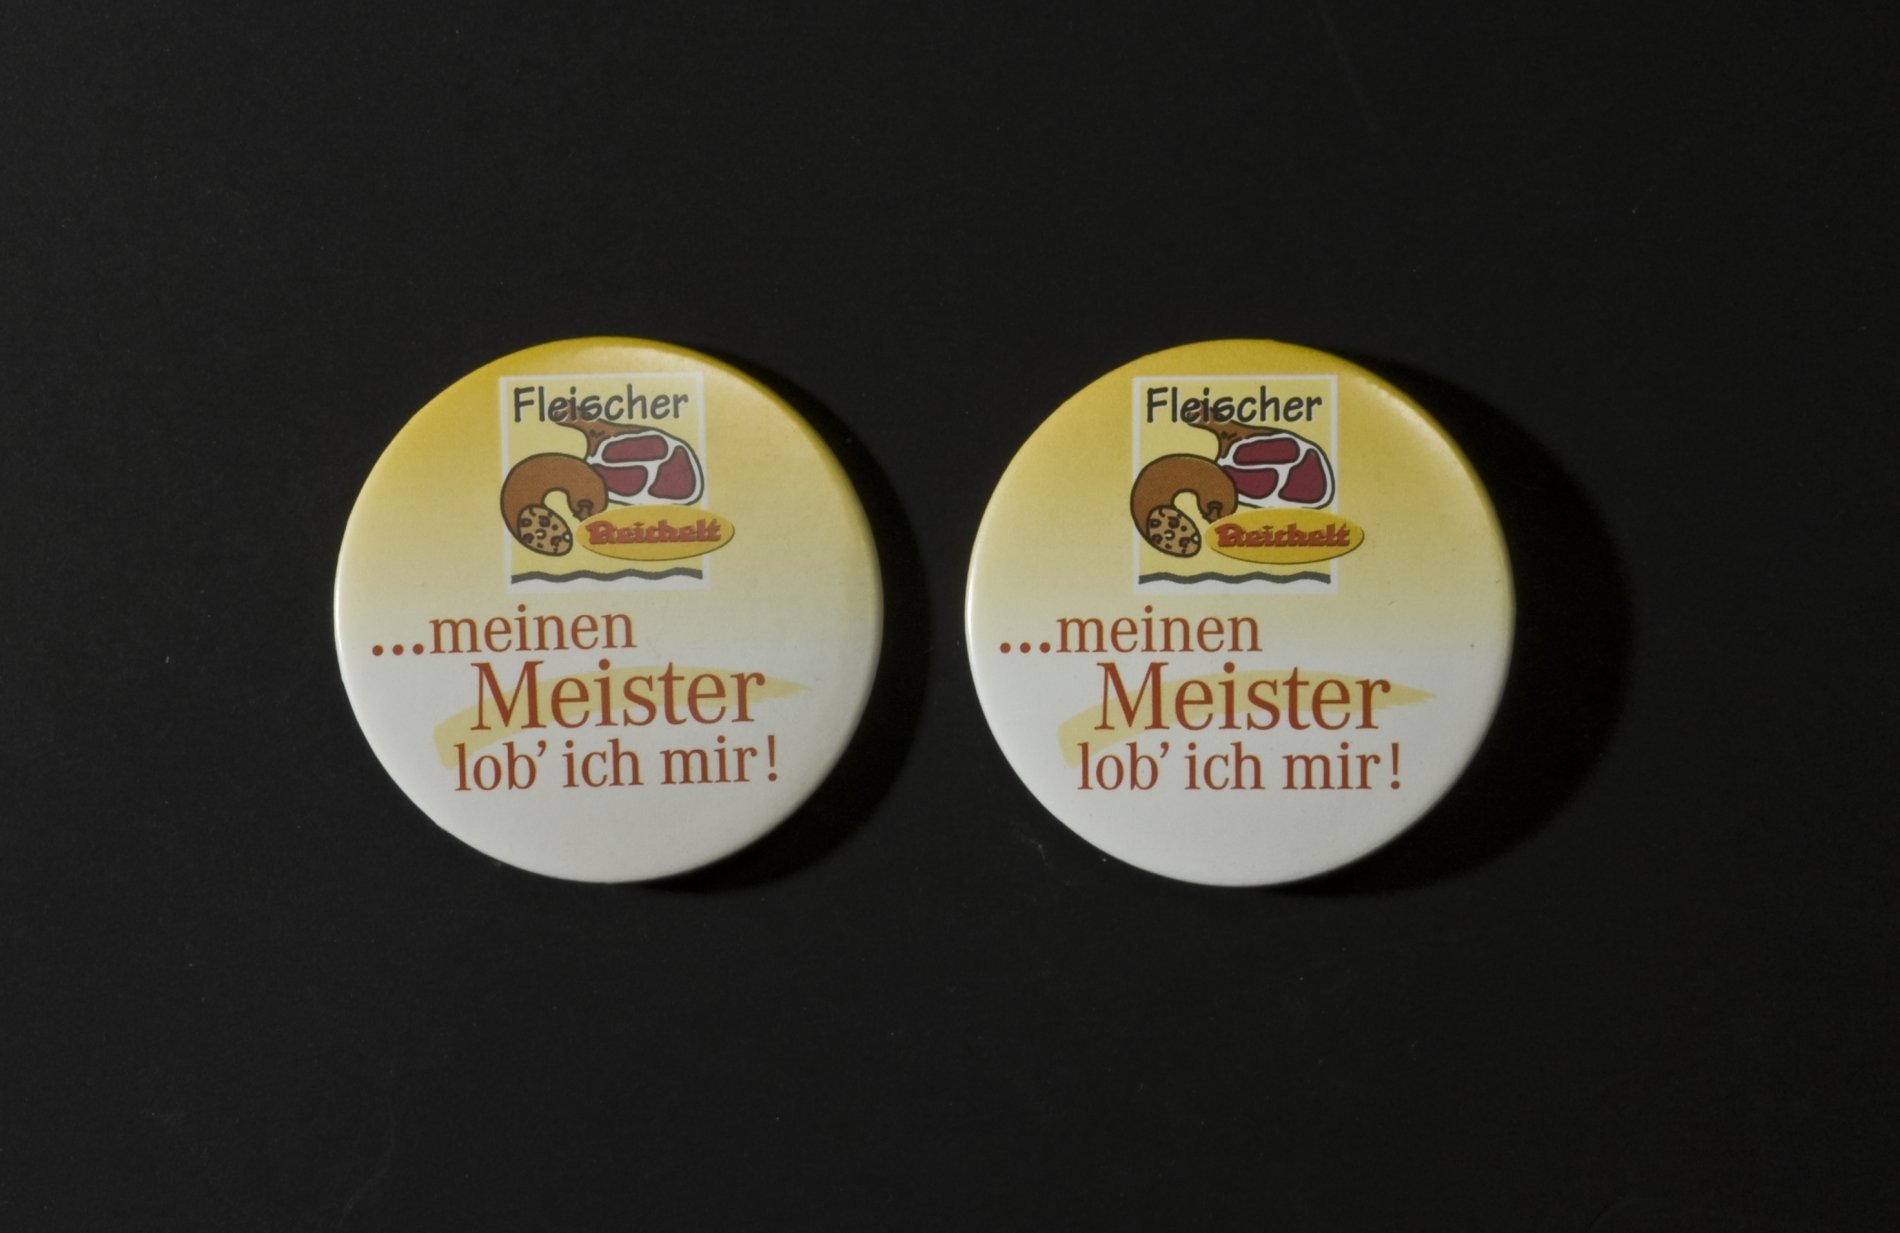 Zwei Buttons der Firma "Reichelt" - "Fleischer  meinen Meister lob ich mir" (Stiftung Domäne Dahlem - Landgut und Museum, Weiternutzung nur mit Genehmigung des Museums CC BY-NC-SA)